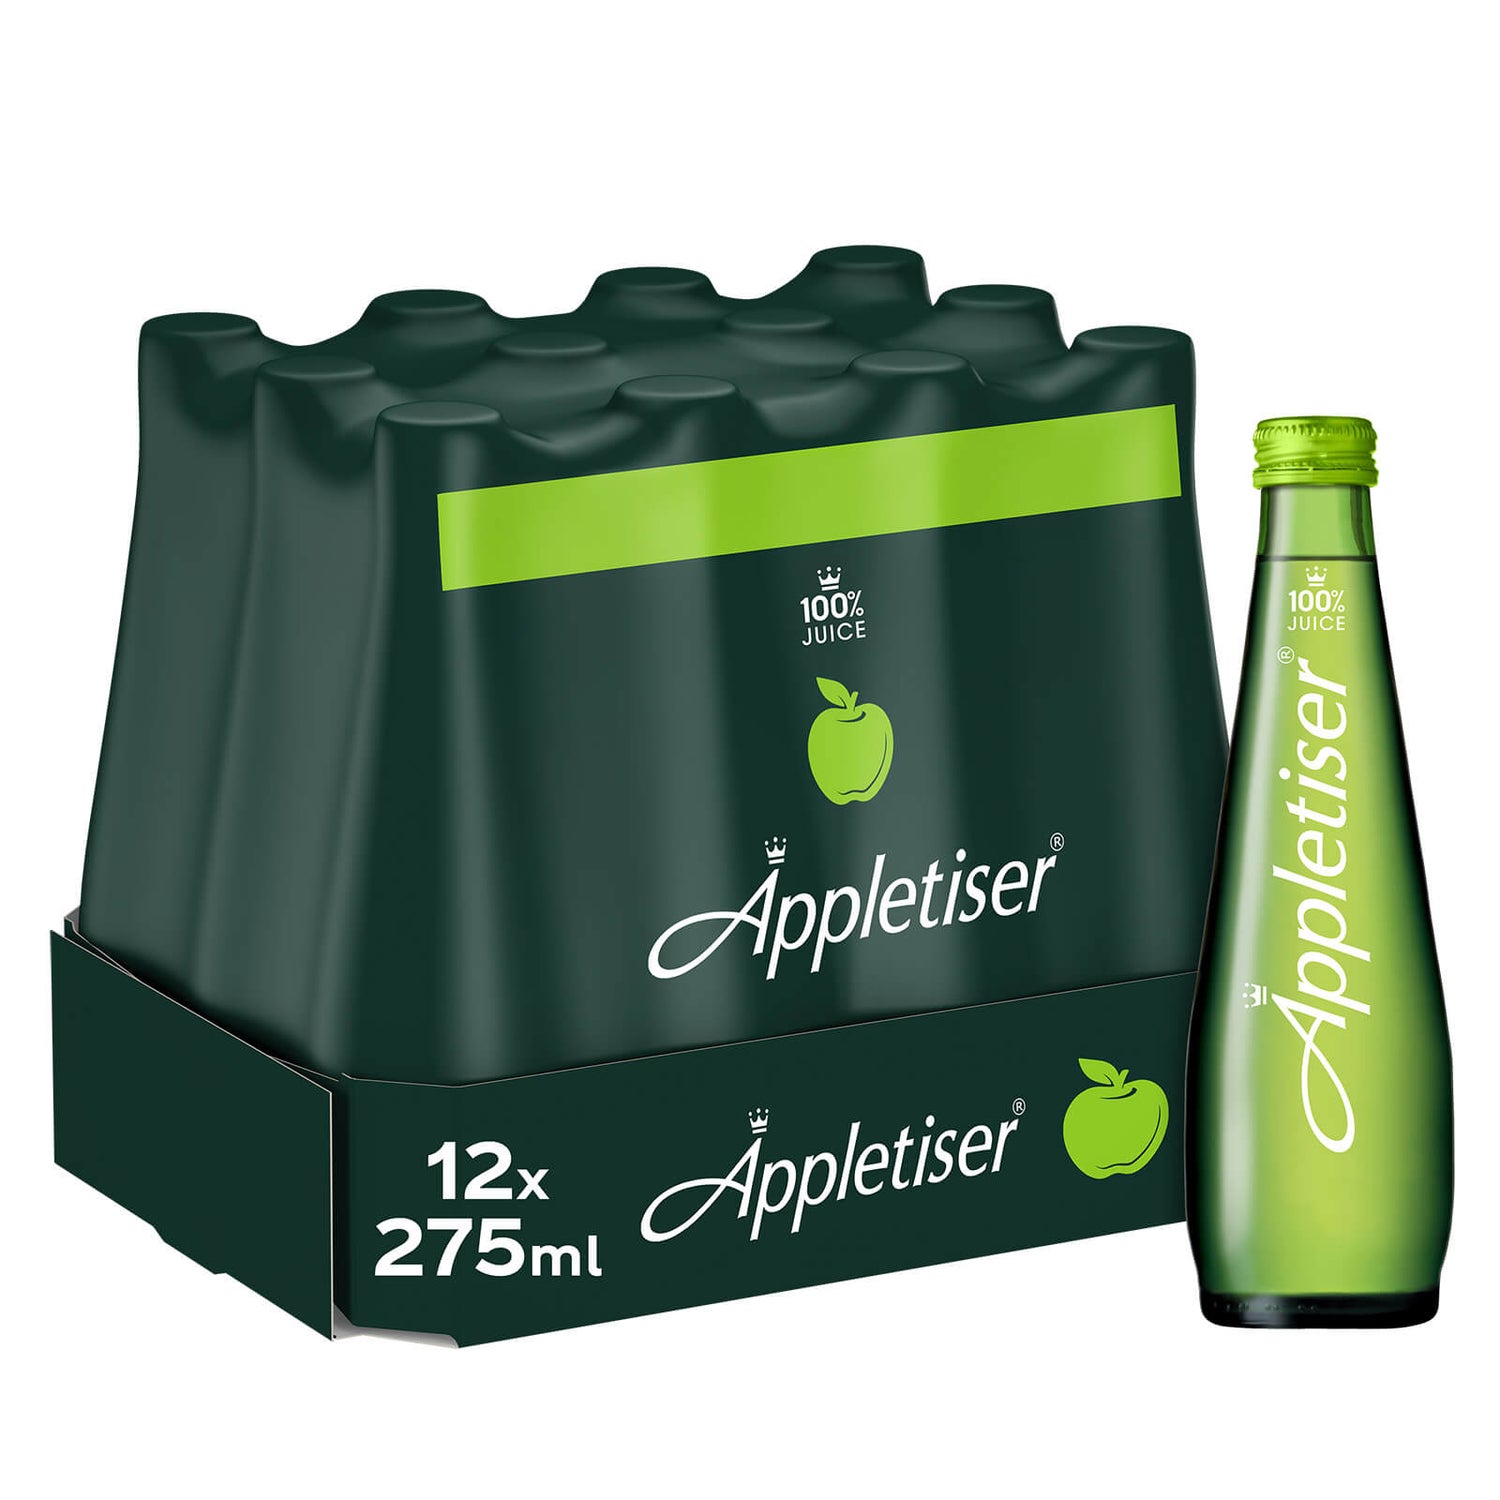 Appletiser 12 x 275ml Glass Bottles